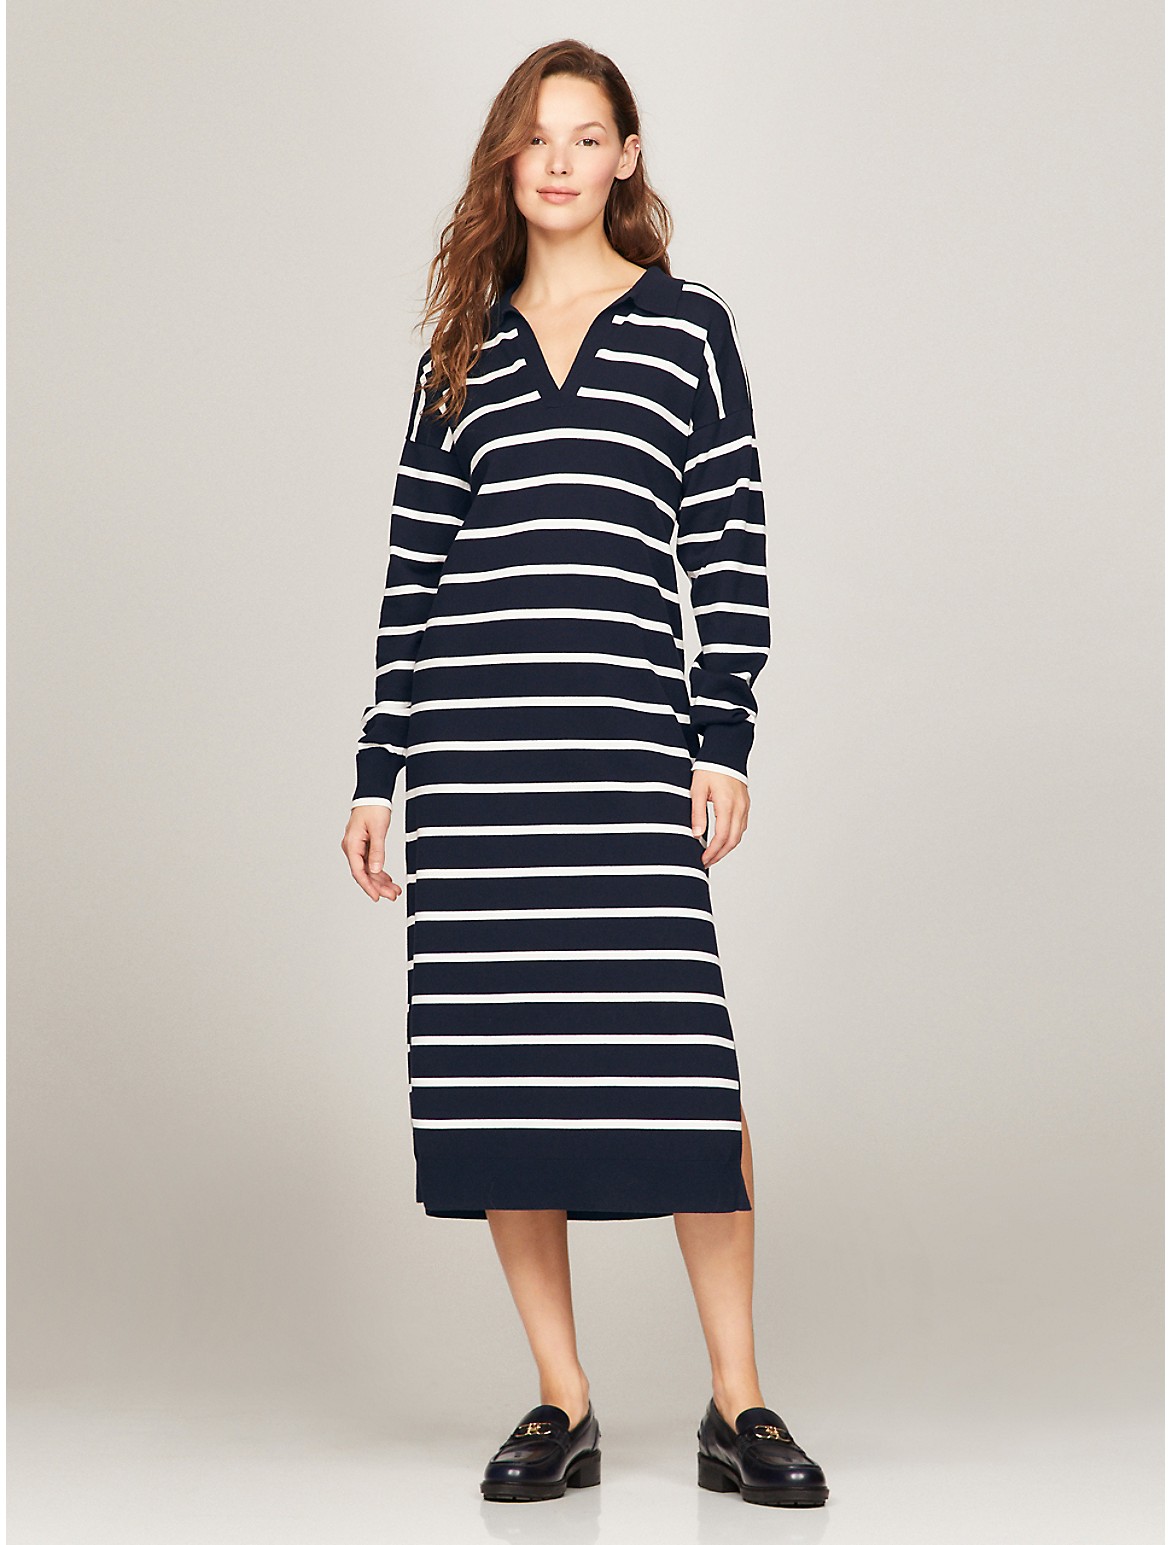 Tommy Hilfiger Women's Long-Sleeve Stripe Polo Sweater Dress